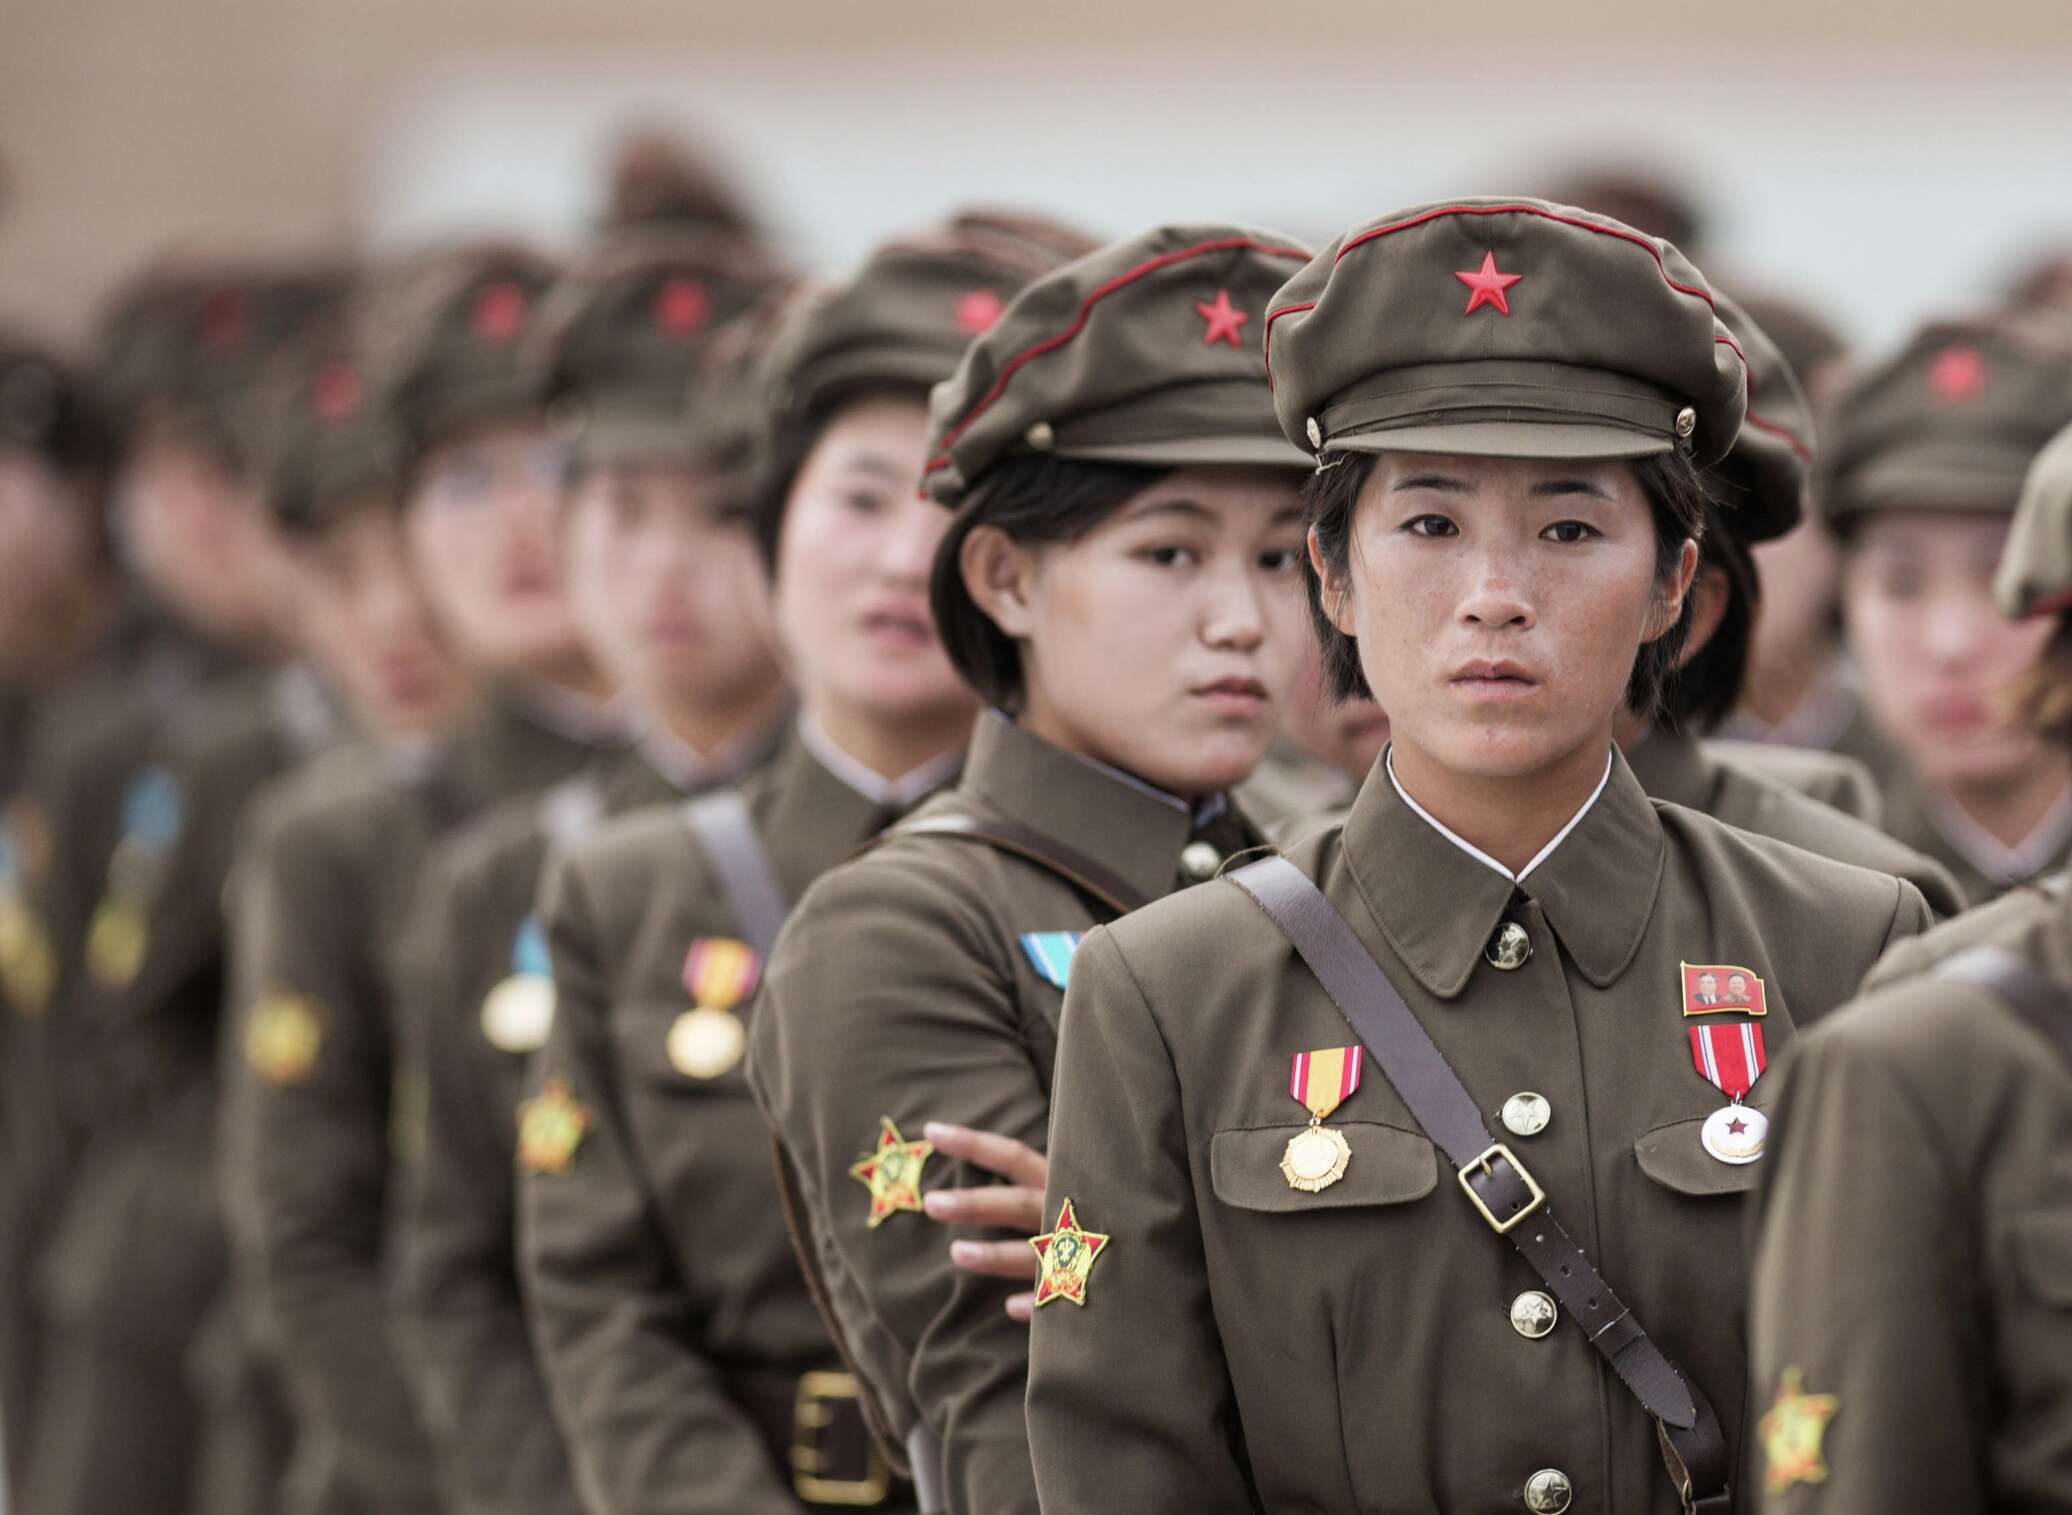 Смотреть Порно С Корейских Девушек Военных